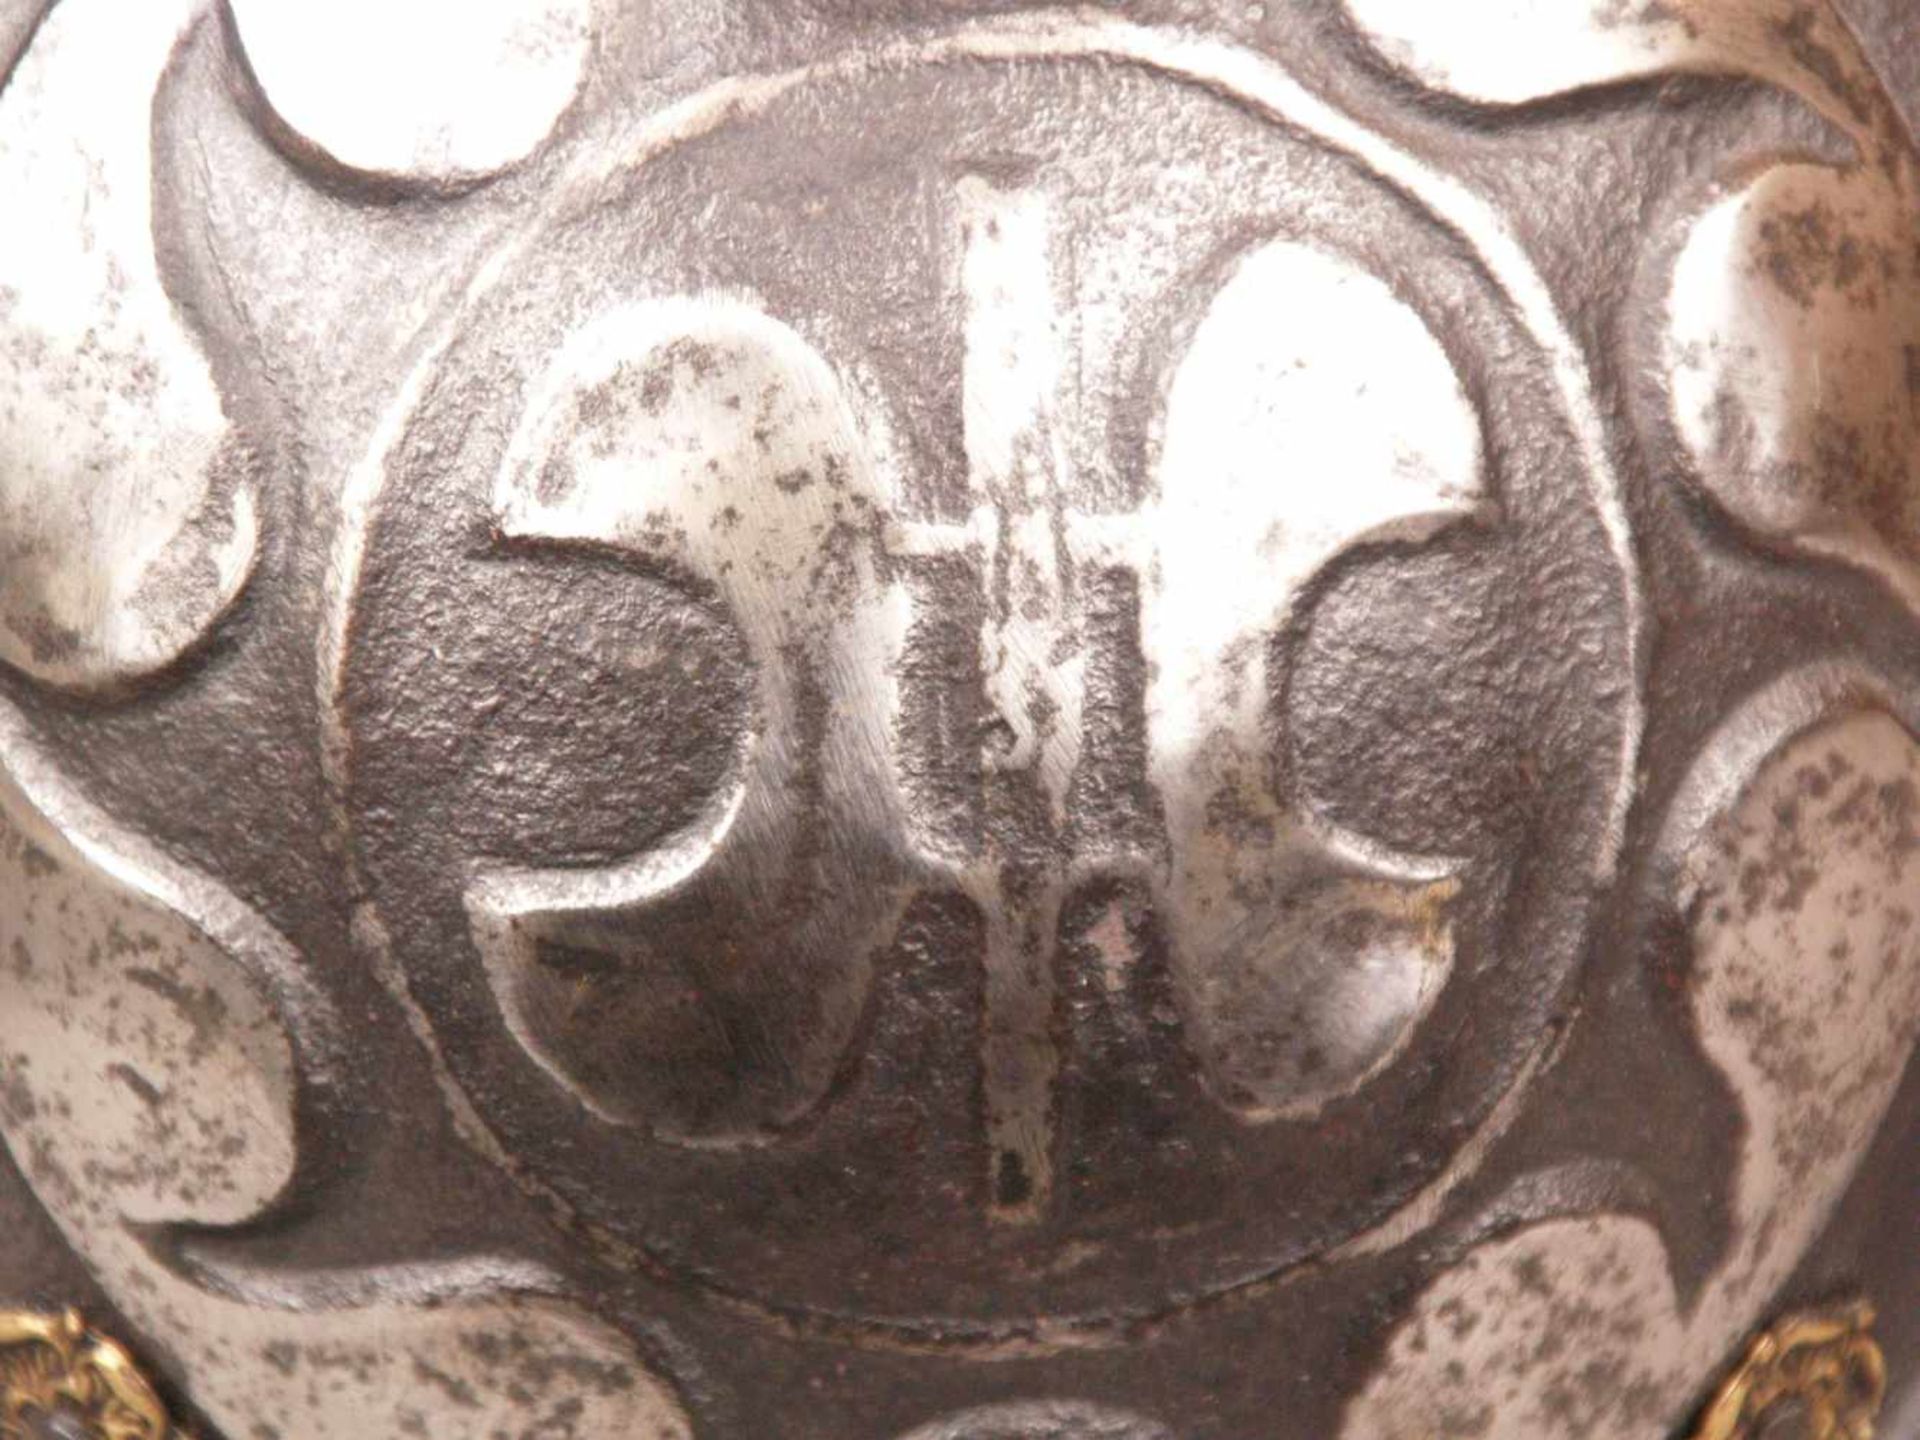 Schwarz-weißer Morion/Helm - süddeutsch, Ende 16.Jh./17.Jh., Eisen, teilweise geschwärzt, zweiteilig - Bild 3 aus 6